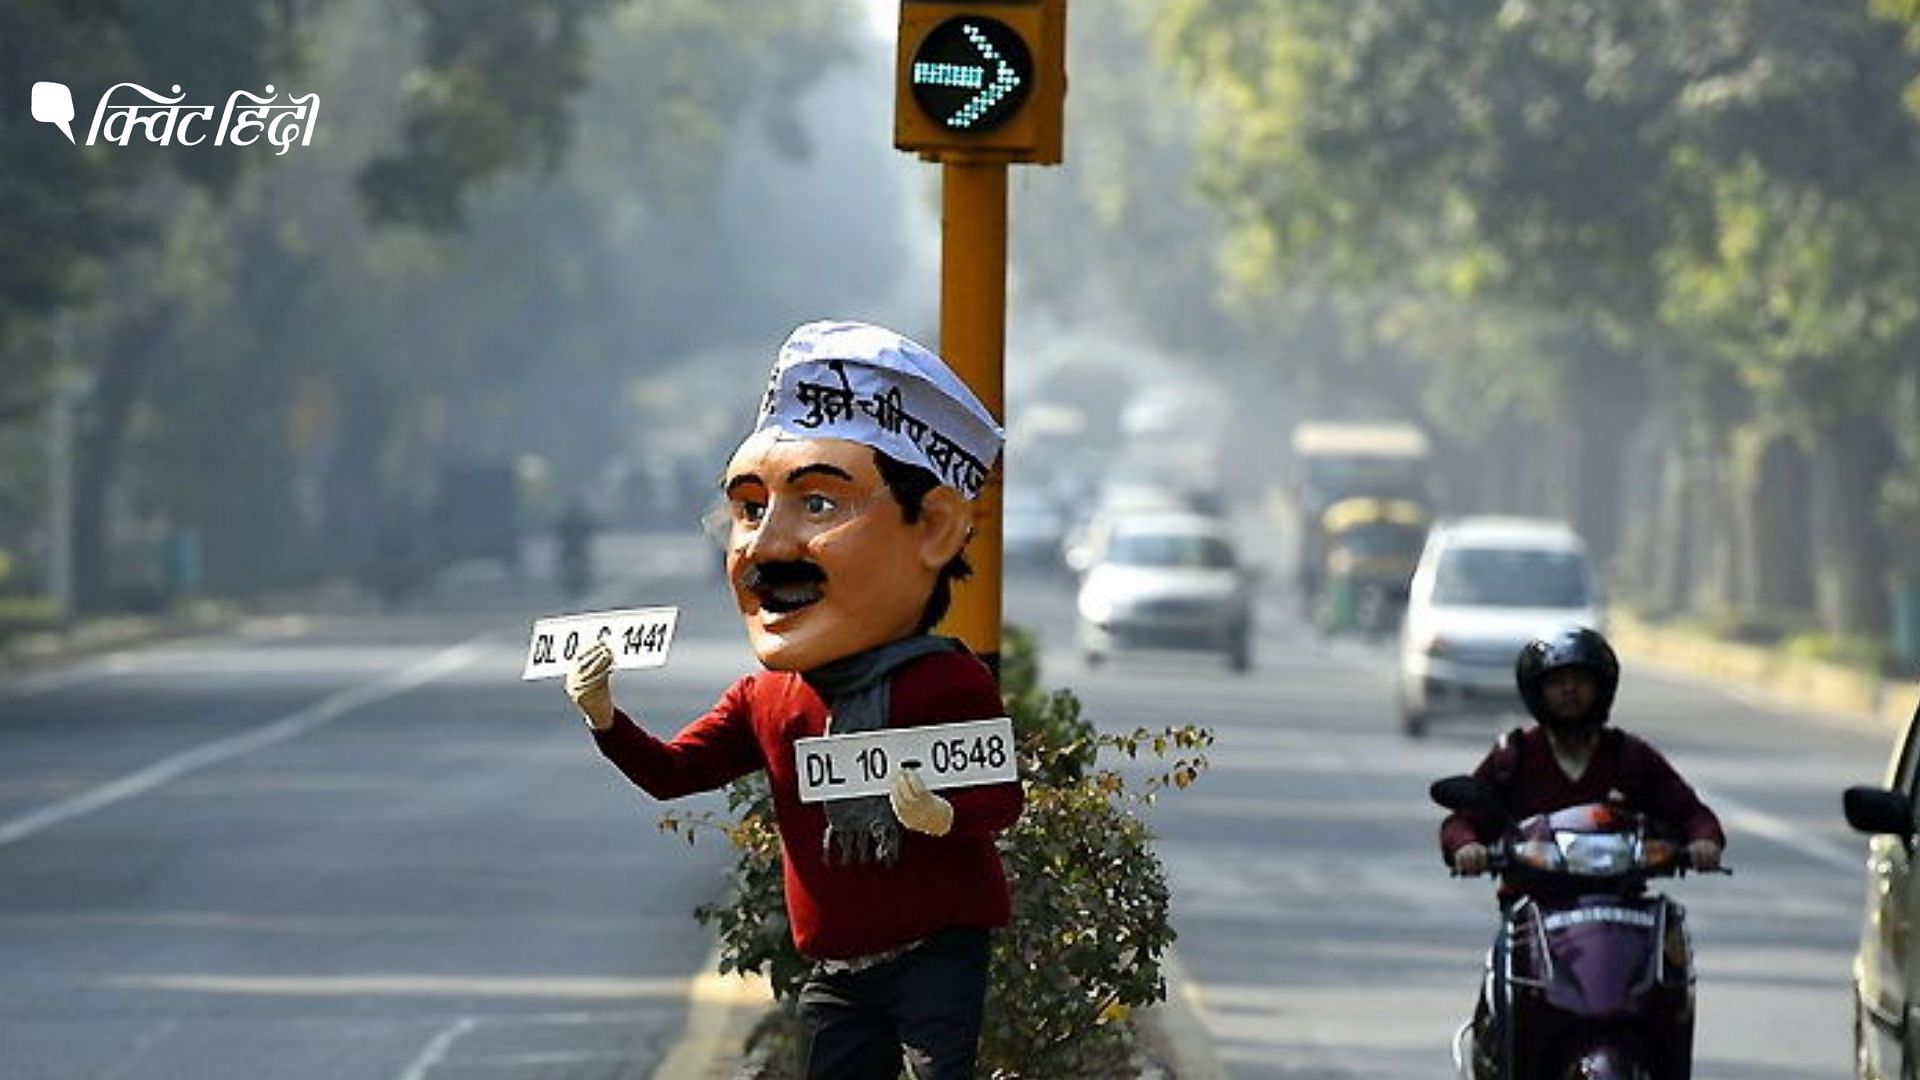 प्रदूषण को देखते हुए दिल्ली में 4 नवंबर से 15 नवंबर तक लागू रहेगा ऑड-इवन